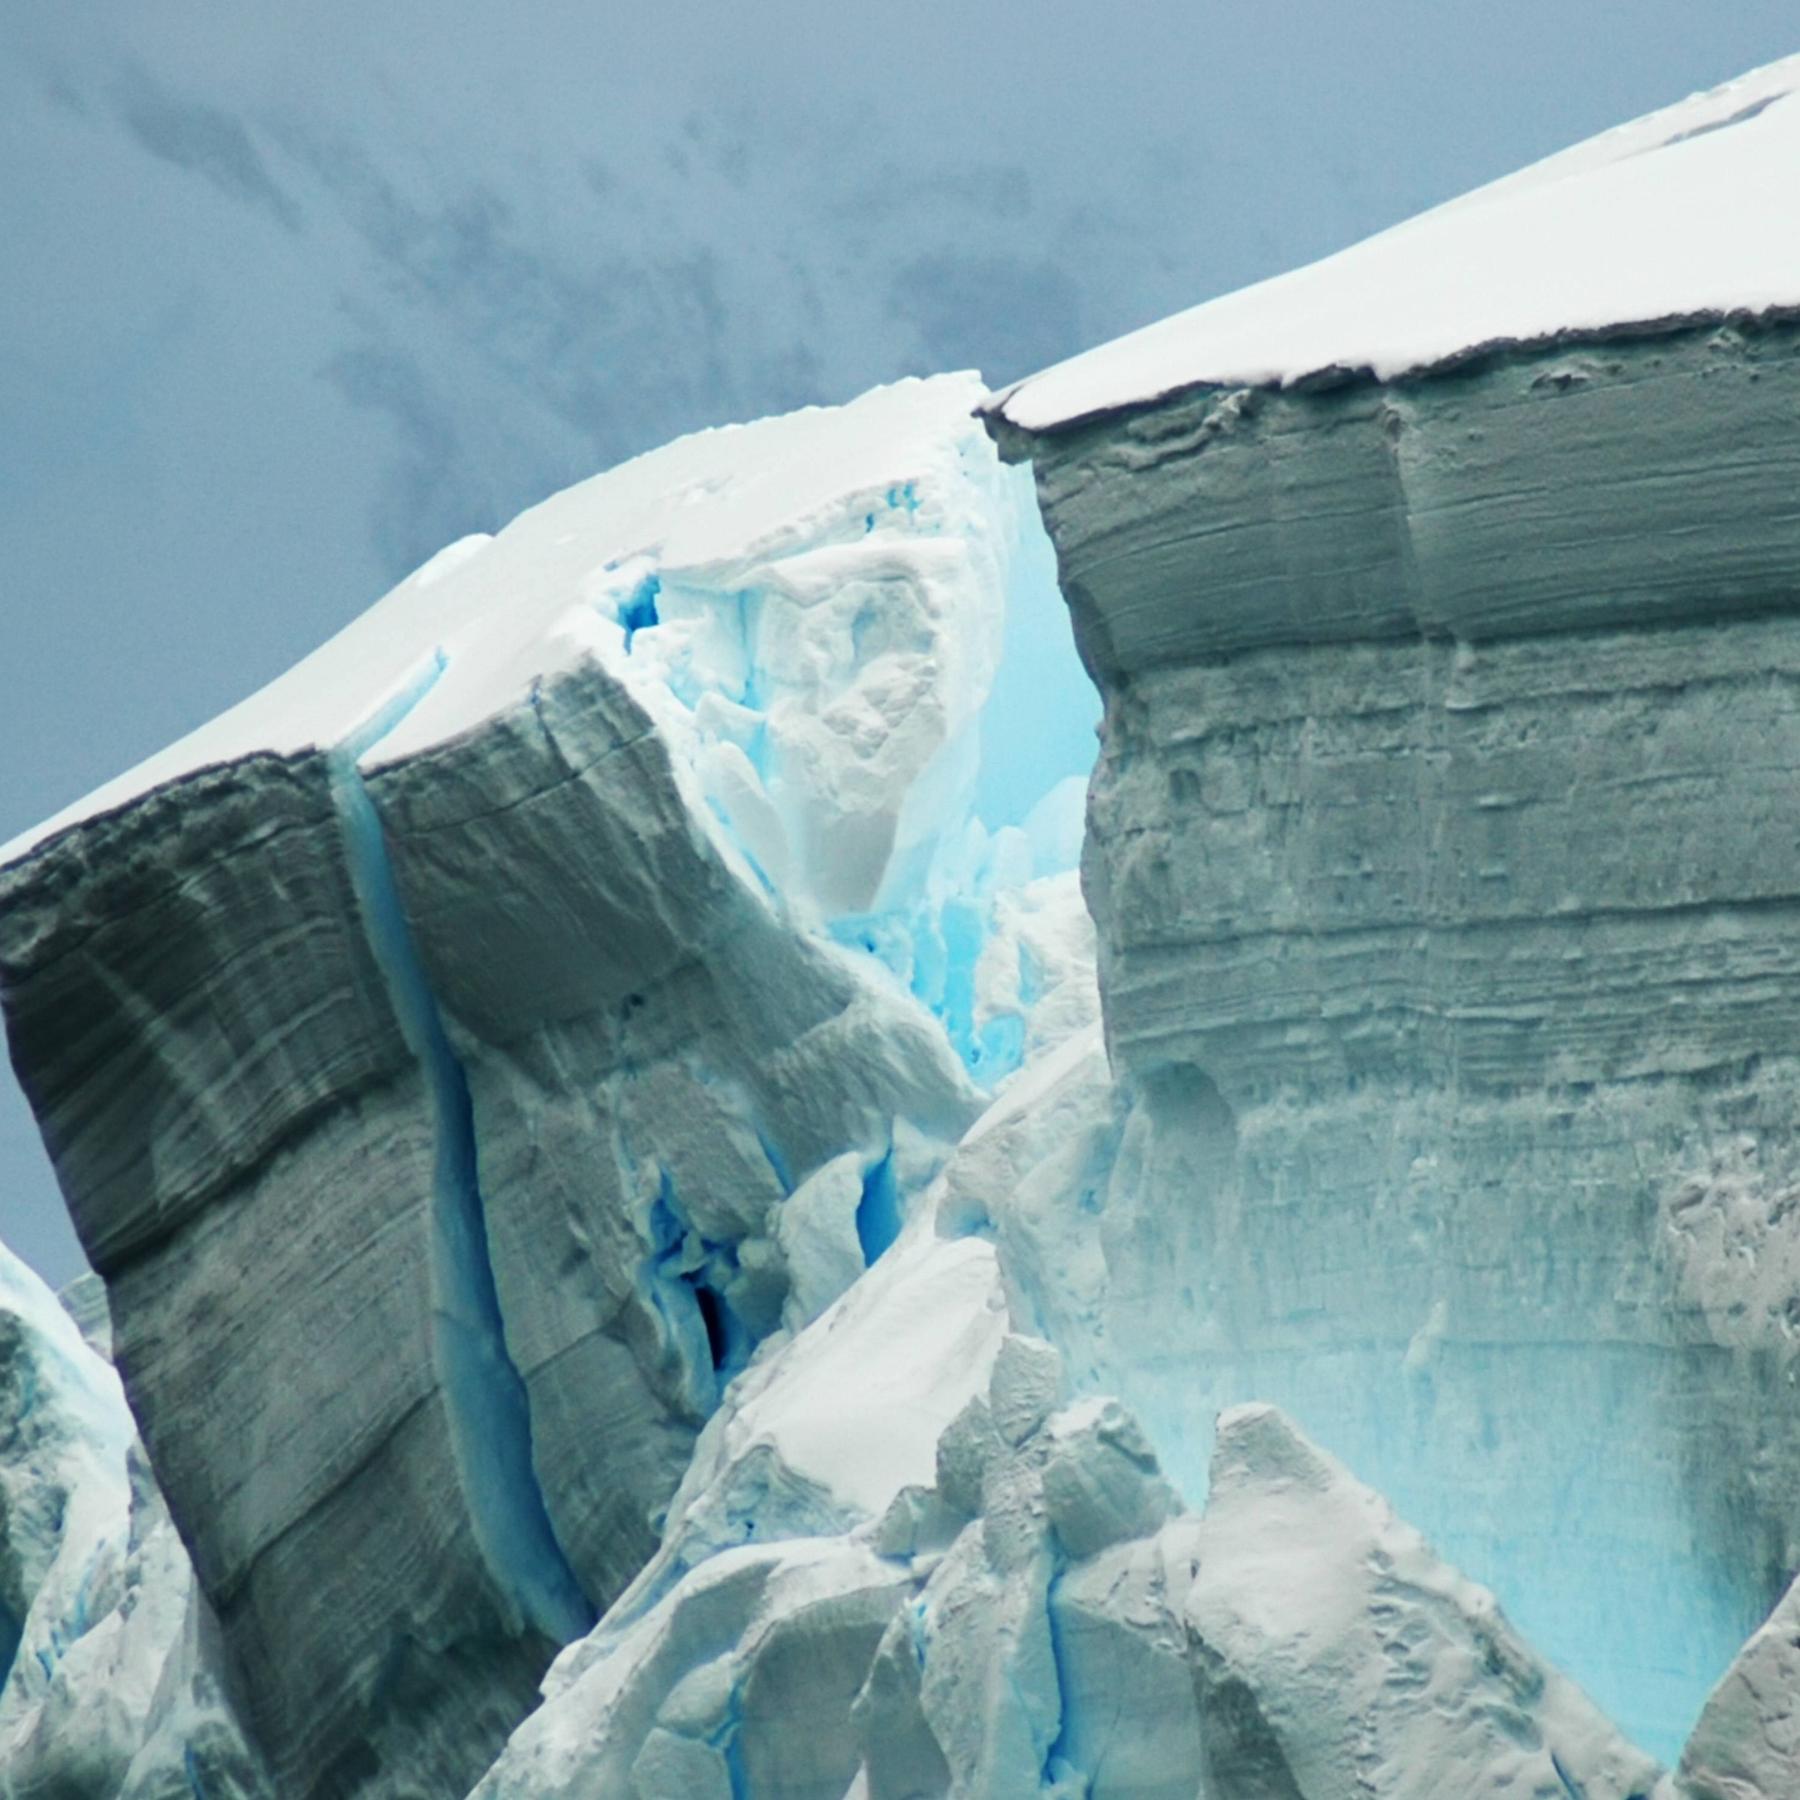 Klimaarchiv in der Antarktis - Team bohrt nach 1,5 Millionen Jahre altem Eis